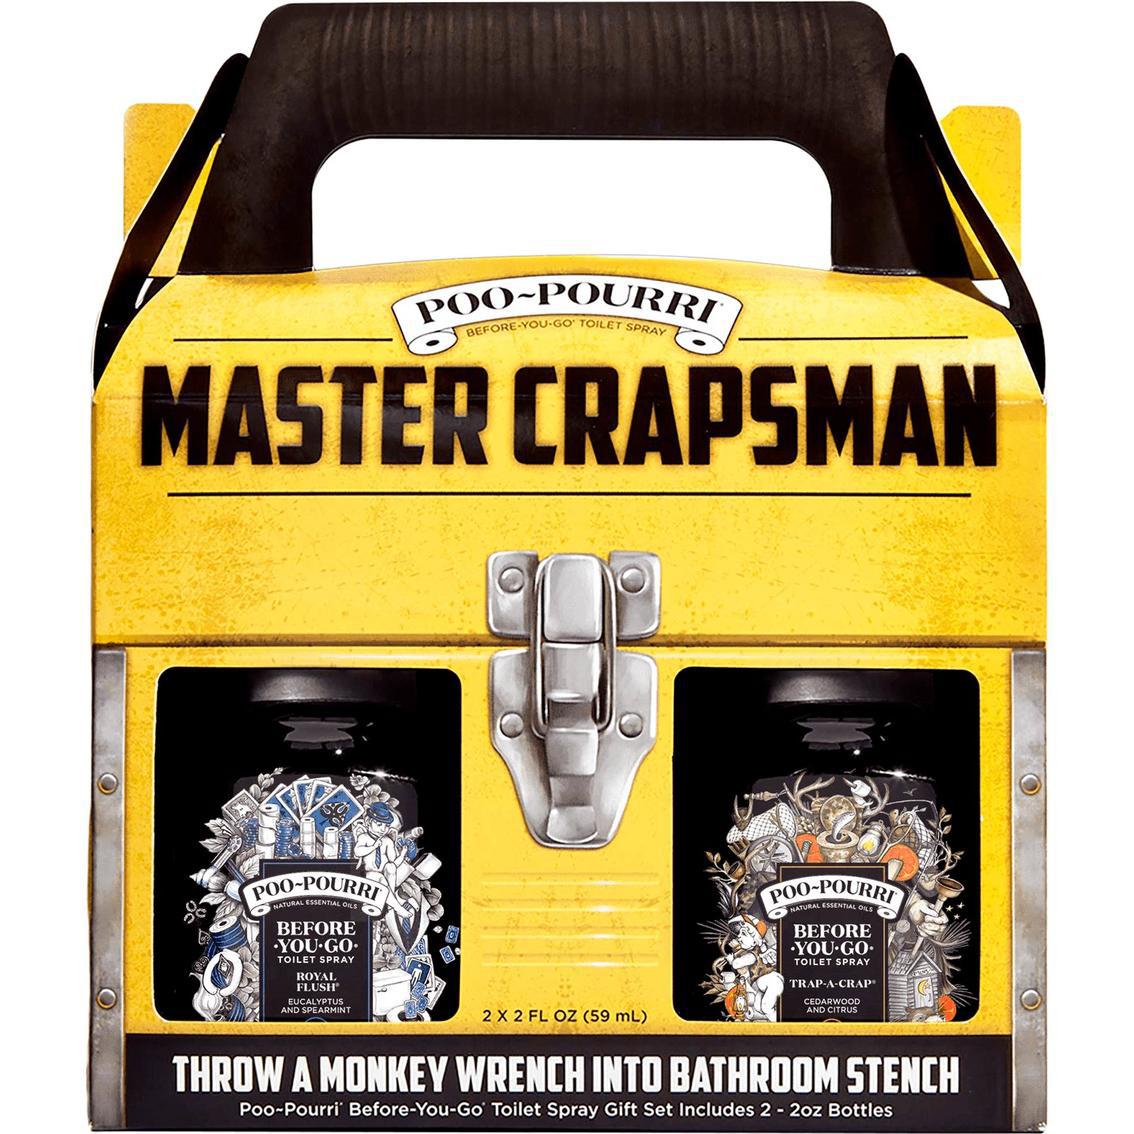 Mater crapsman poo-pourri box containing 2 toilet scented sprays 